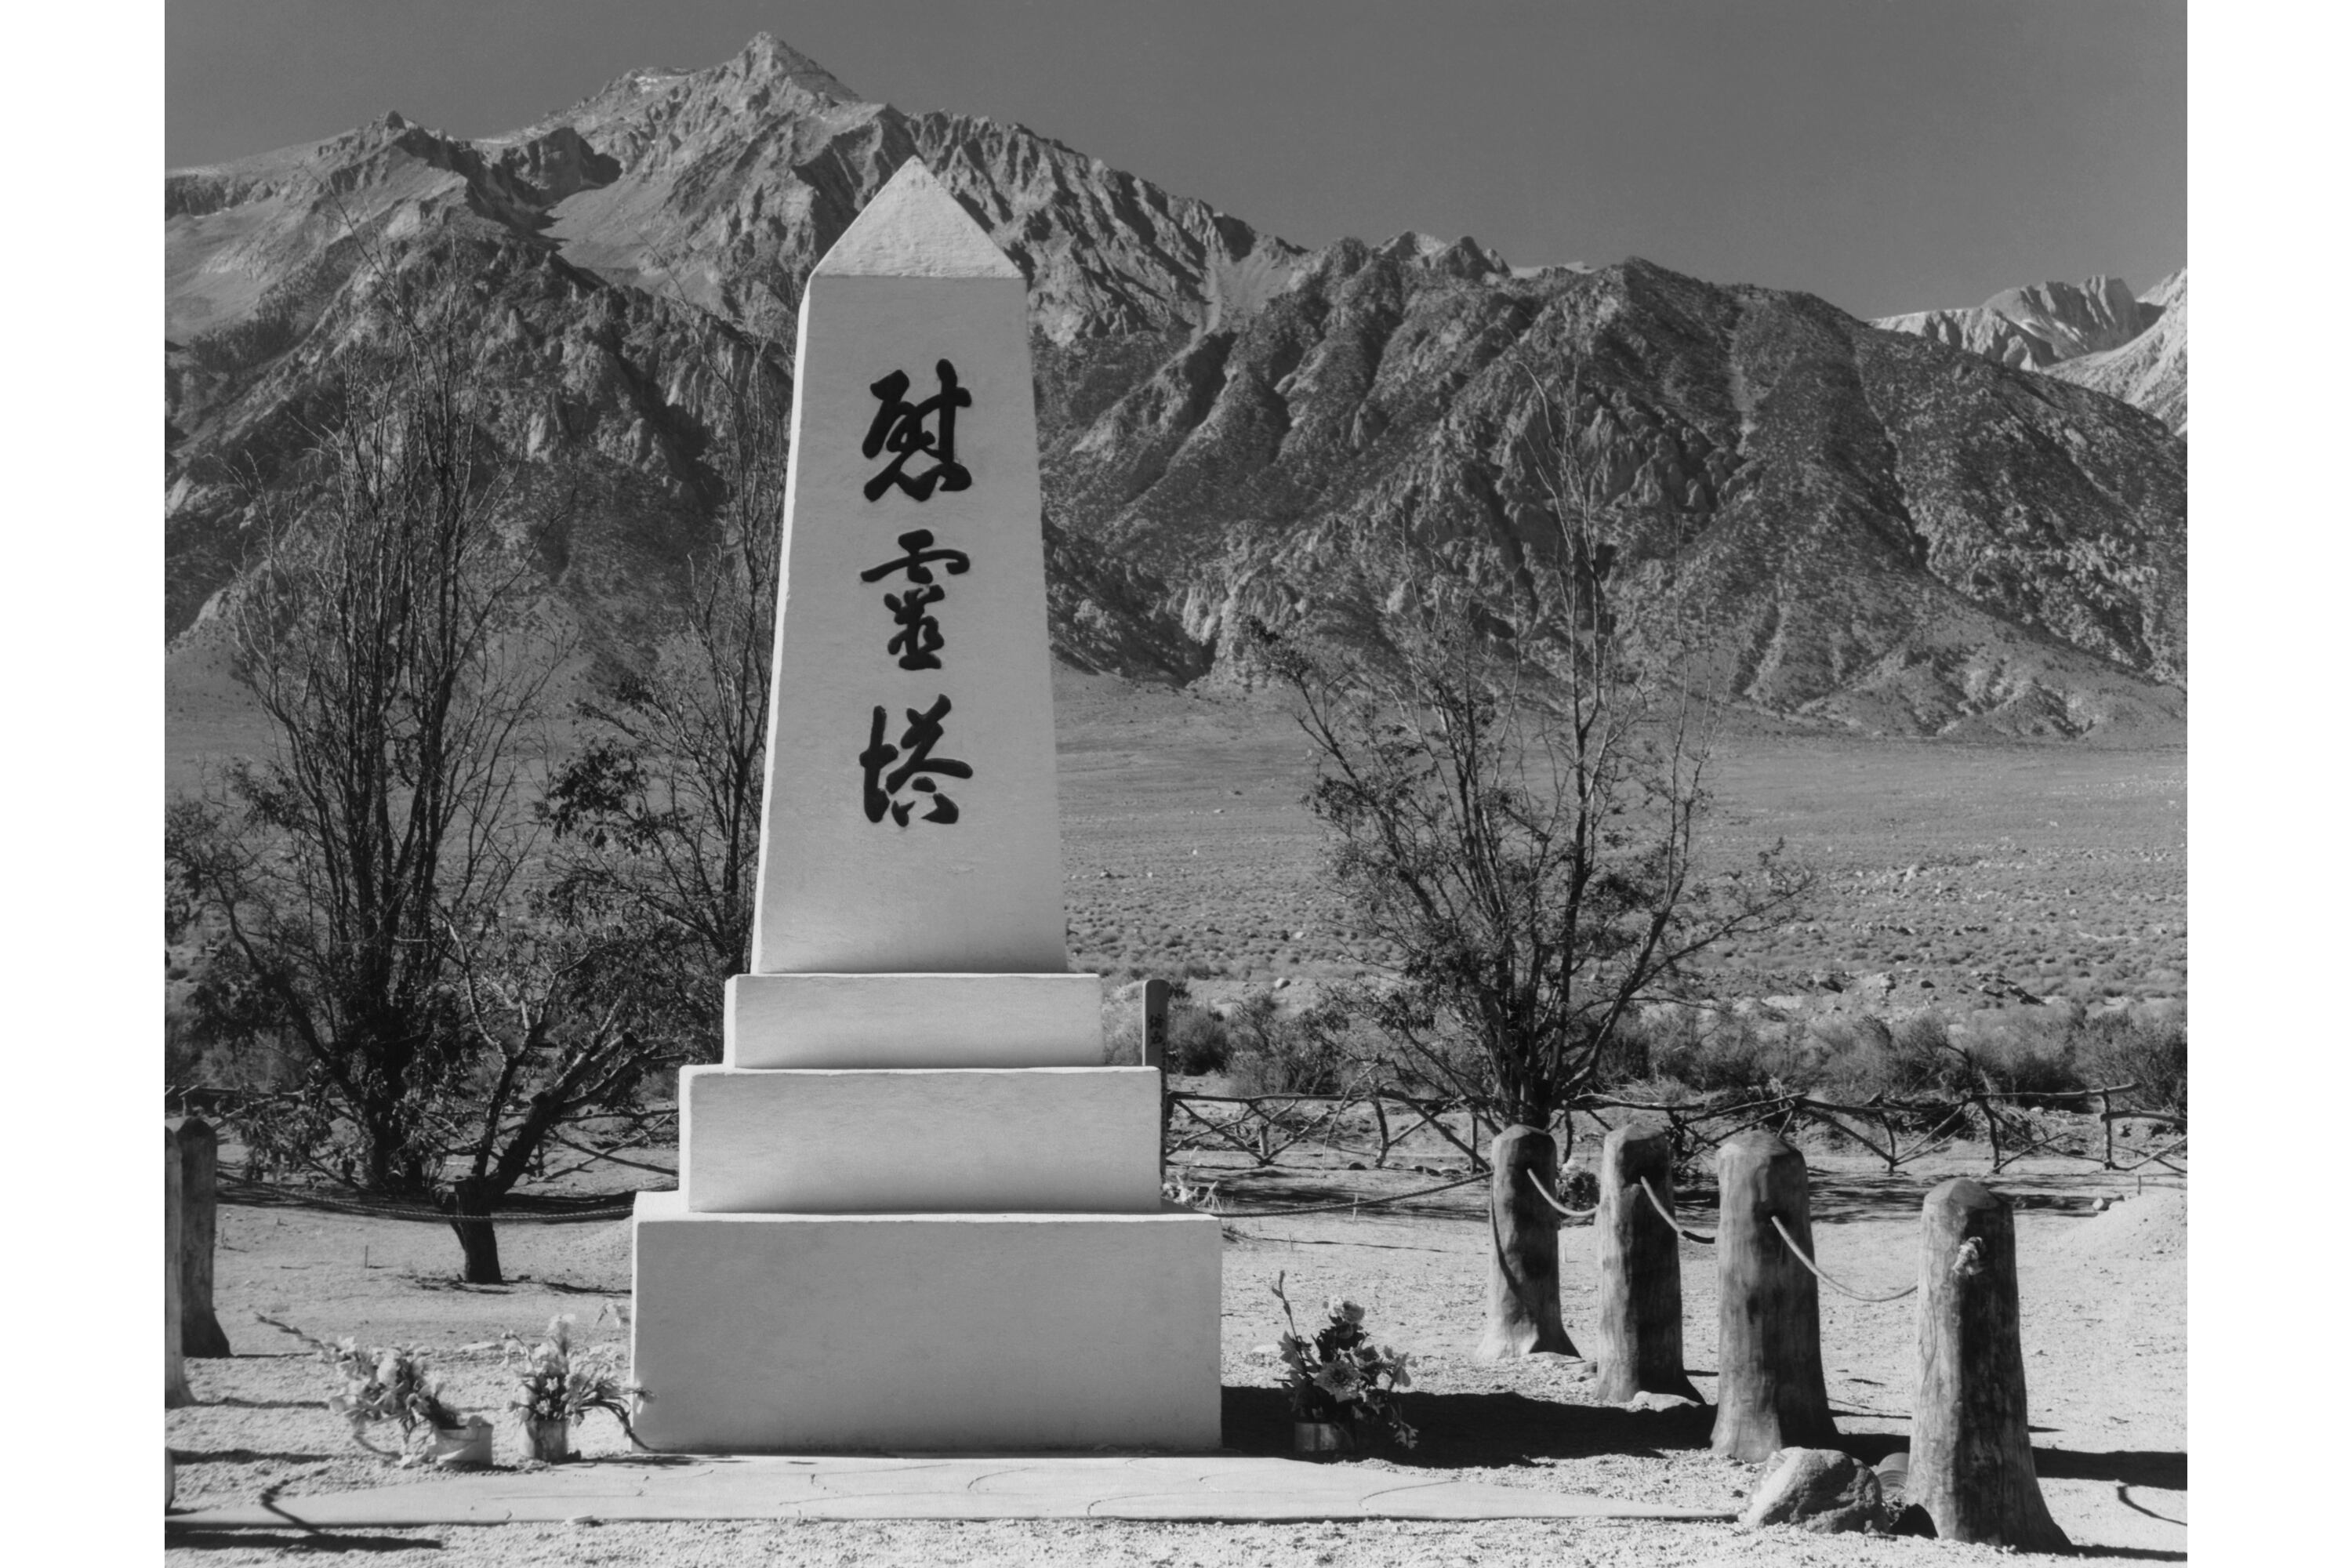 Imagen del fotógrafo estadounidense Ansel Adams (1902 1984) tomada en torno a 1943 en el Manzanar, en el valle de Owens, California, el más famoso de los campos de concentración en los que Estados Unidos confinó a 120.000 ciudadanos de origen japonés entre marzo de 1942 y noviembre de 1945 tras el ataque de Japón Pearl Harbour en diciembre de 1941. 